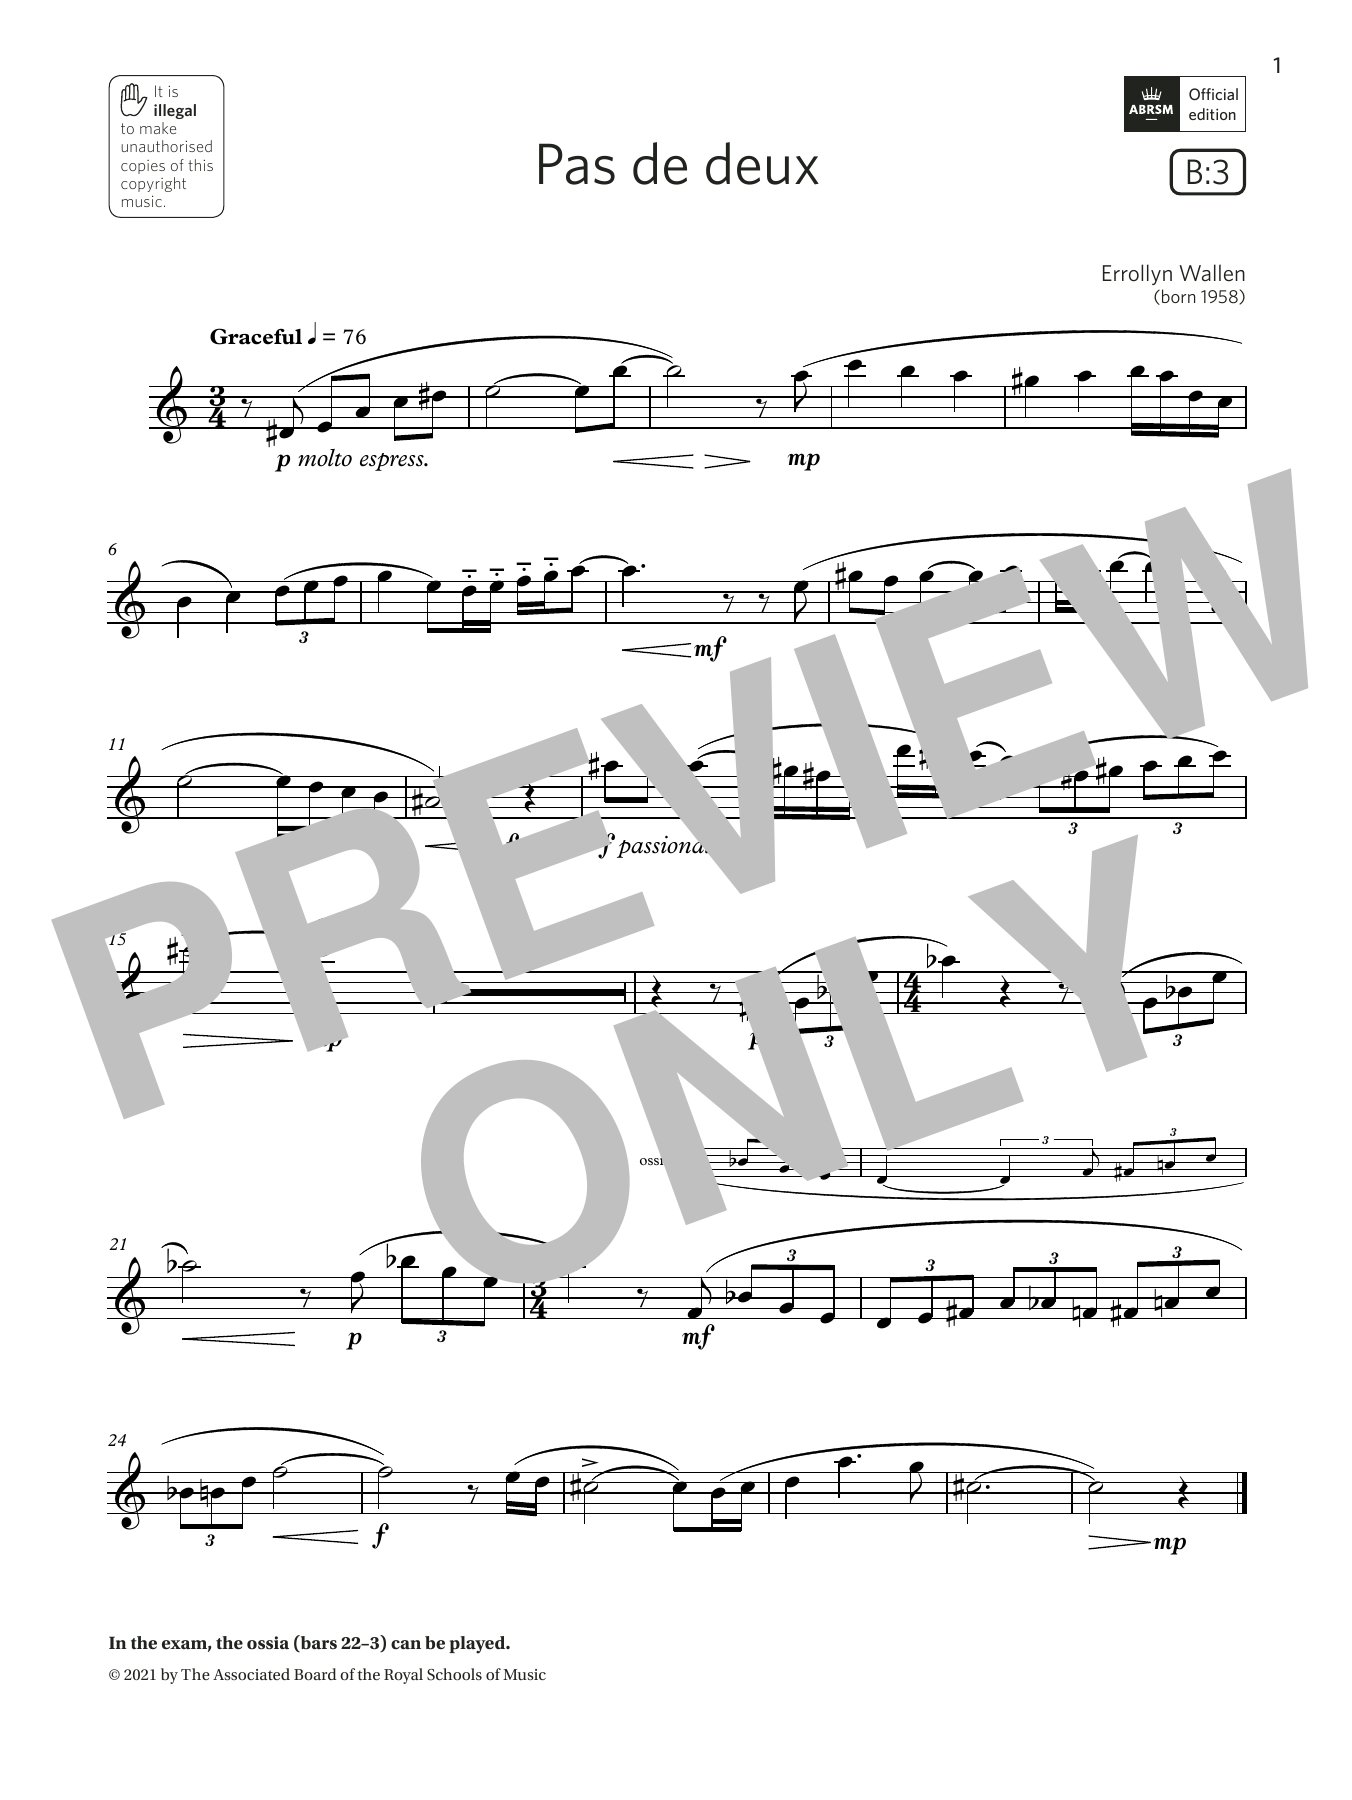 Download Errollyn Wallen Pas de deux (Grade 4 List B3 from the A Sheet Music